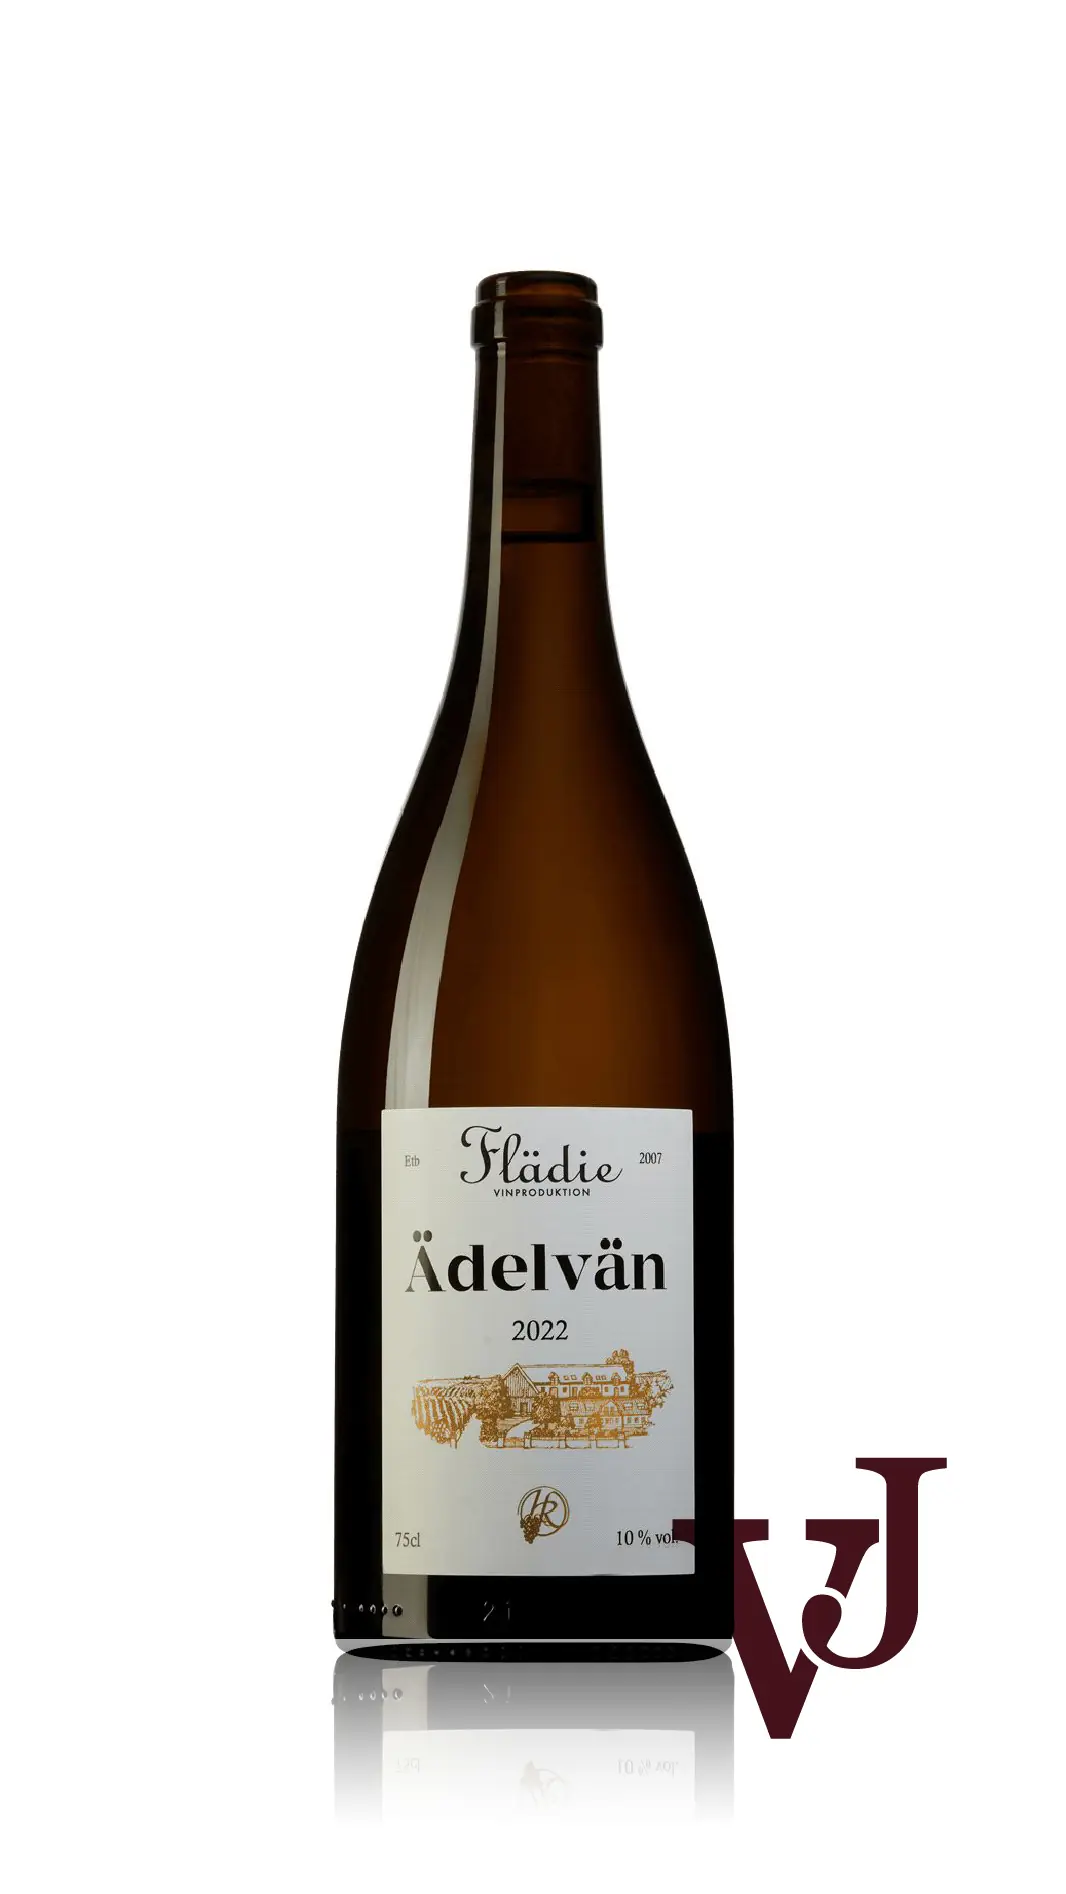 Vitt Vin - Ädelvän Flädie Vingård och Vinproduktion 2022 artikel nummer 3993701 från producenten Flädie Vingård och Vinproduktion från Sverige. - Vinjournalen.se